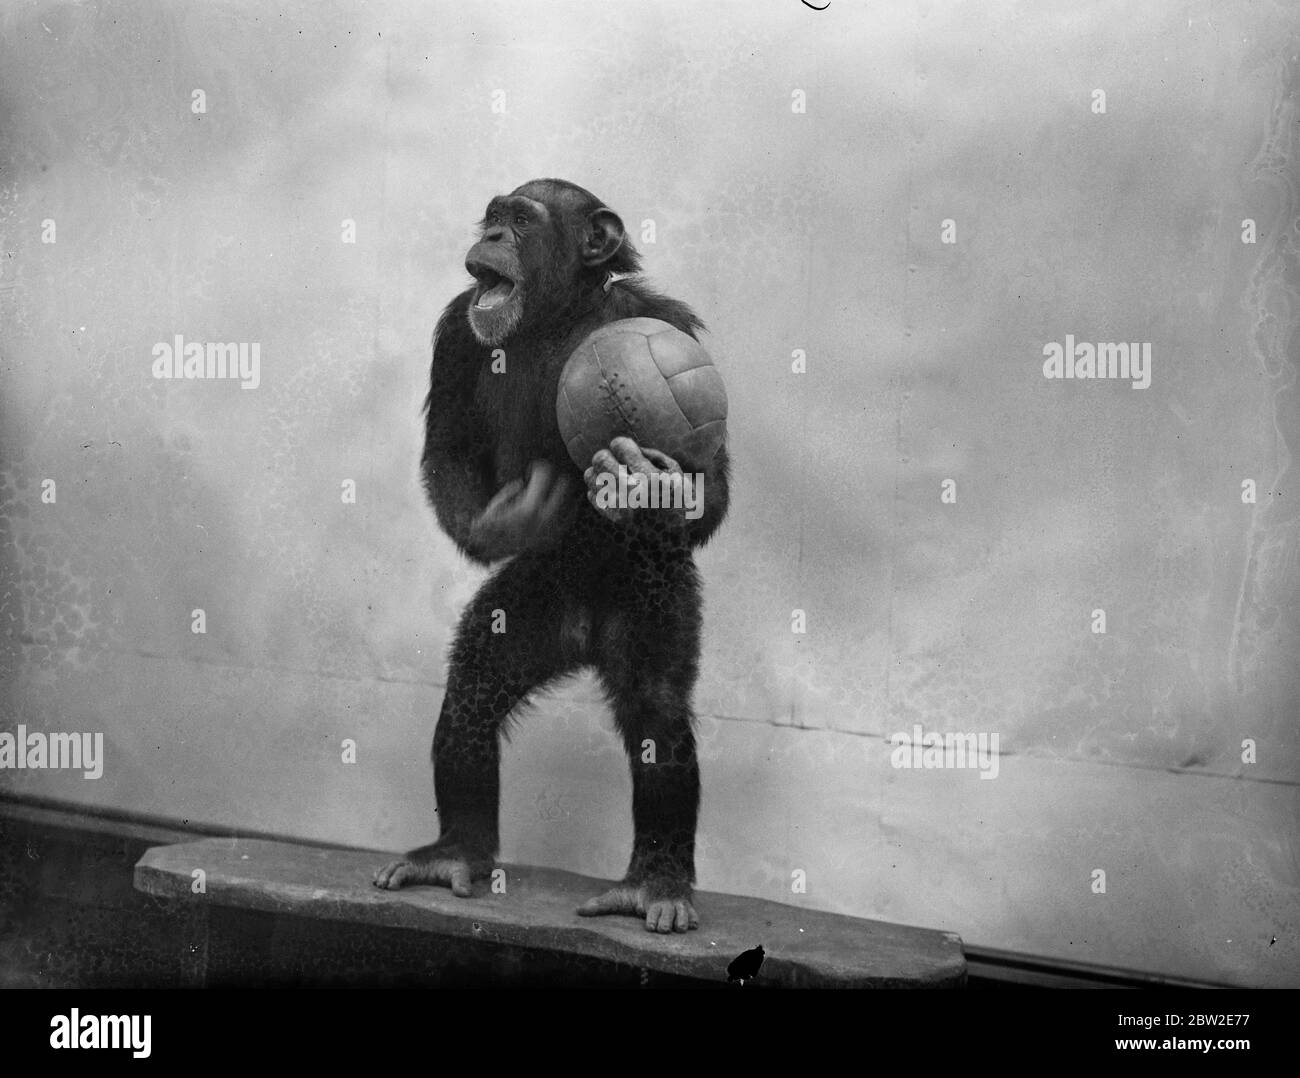 La saison de football a été officiellement inaugurée au zoo de Londres, où Peter, le chimpanzé, le fondateur du football dans le coin des animaux. Peter donne un cours sur les tactiques. 17 août 1937. Banque D'Images